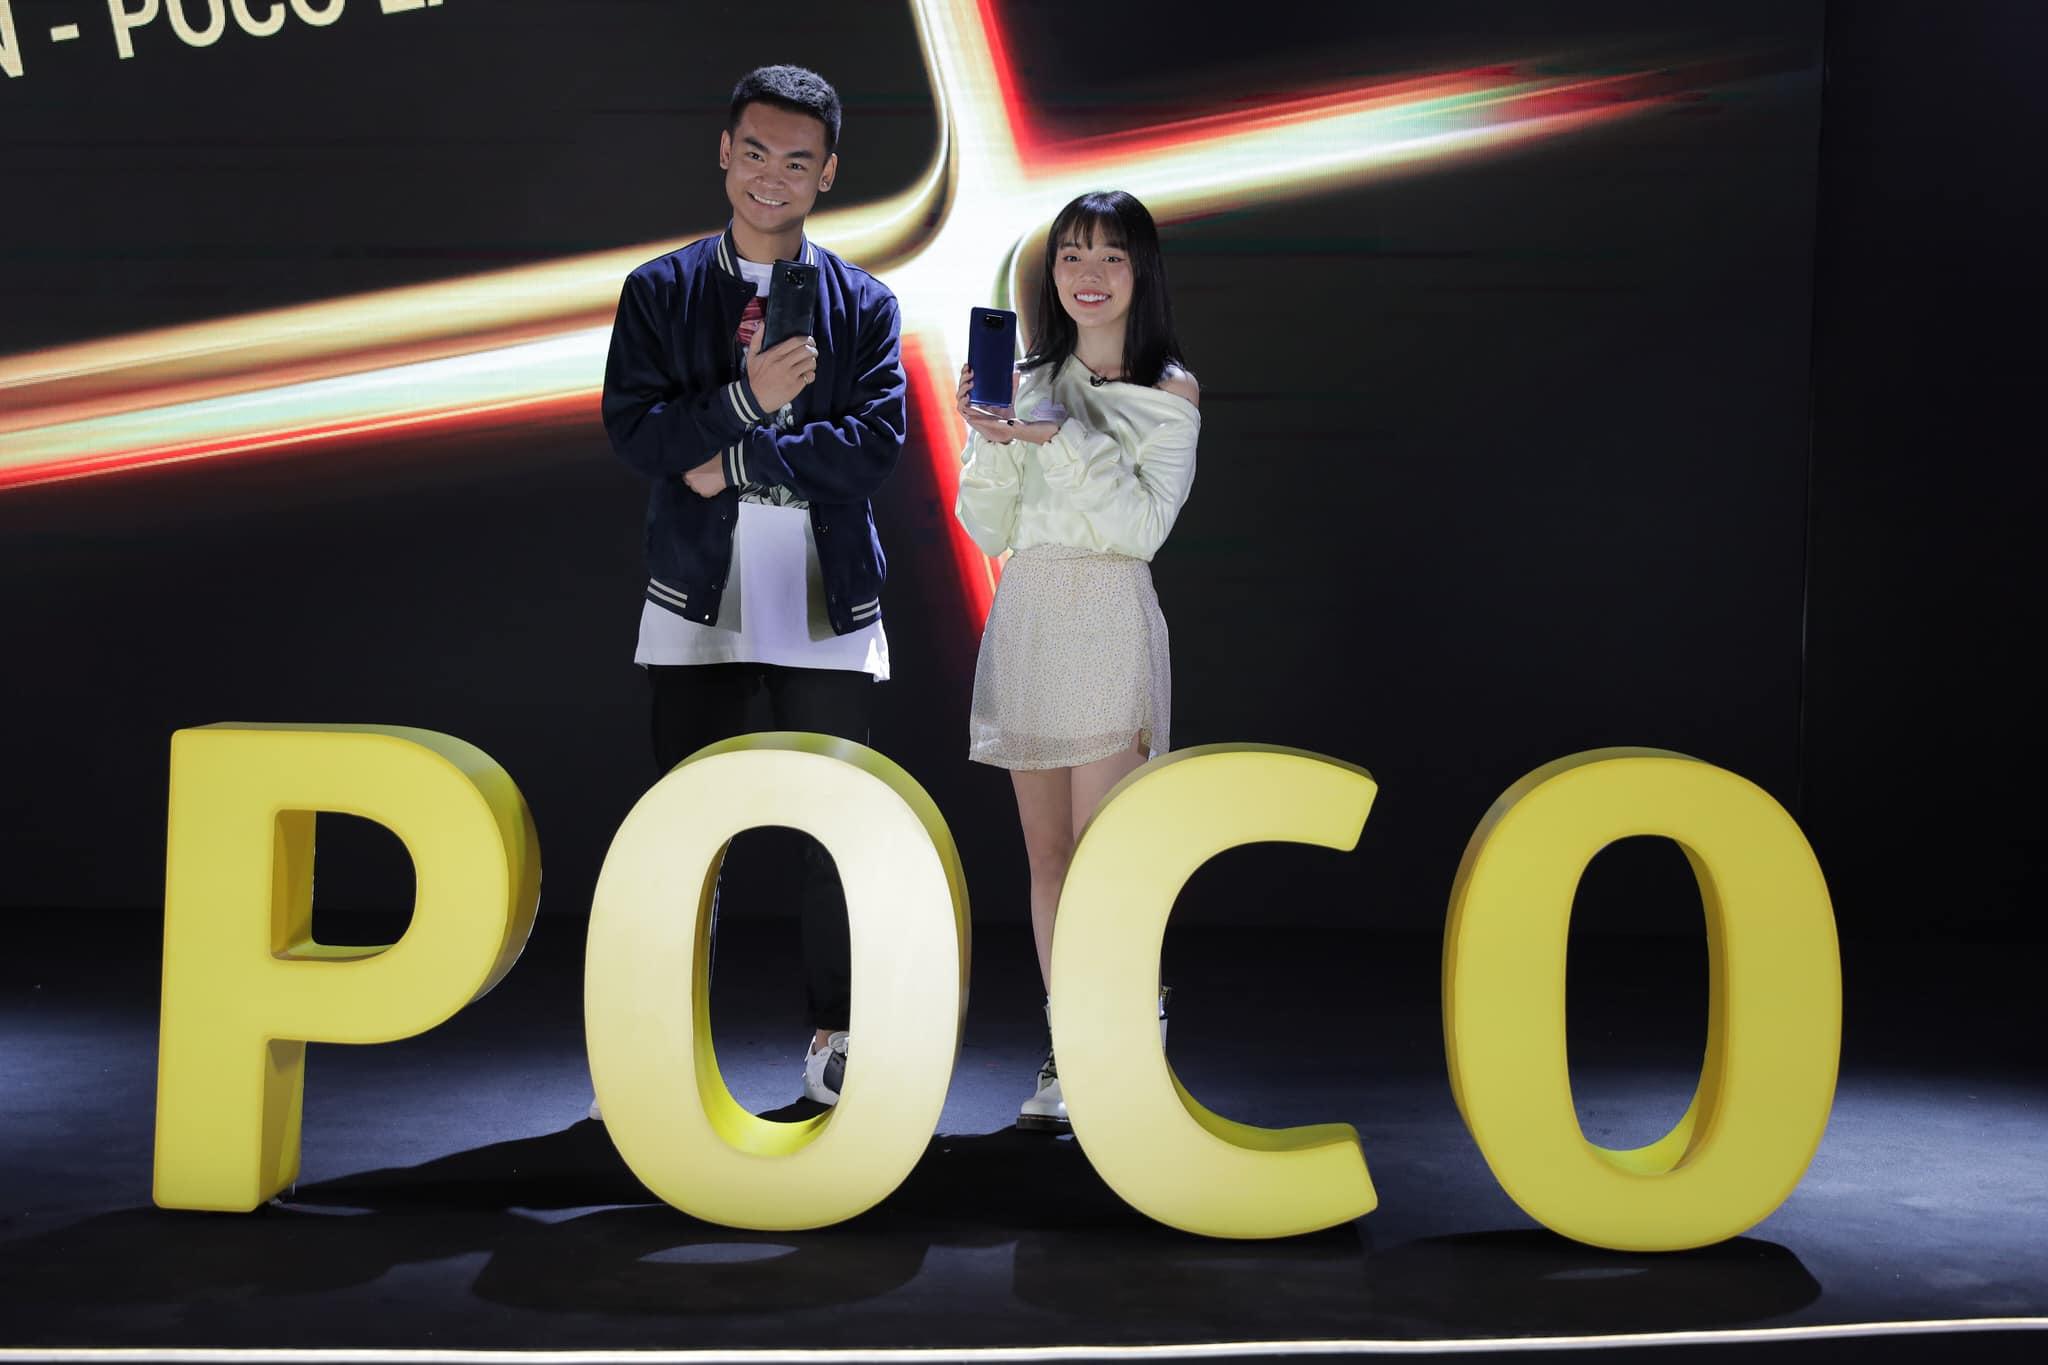 POCO X3 NFC ra mắt tại Việt Nam, giá từ 6,690,000 VND